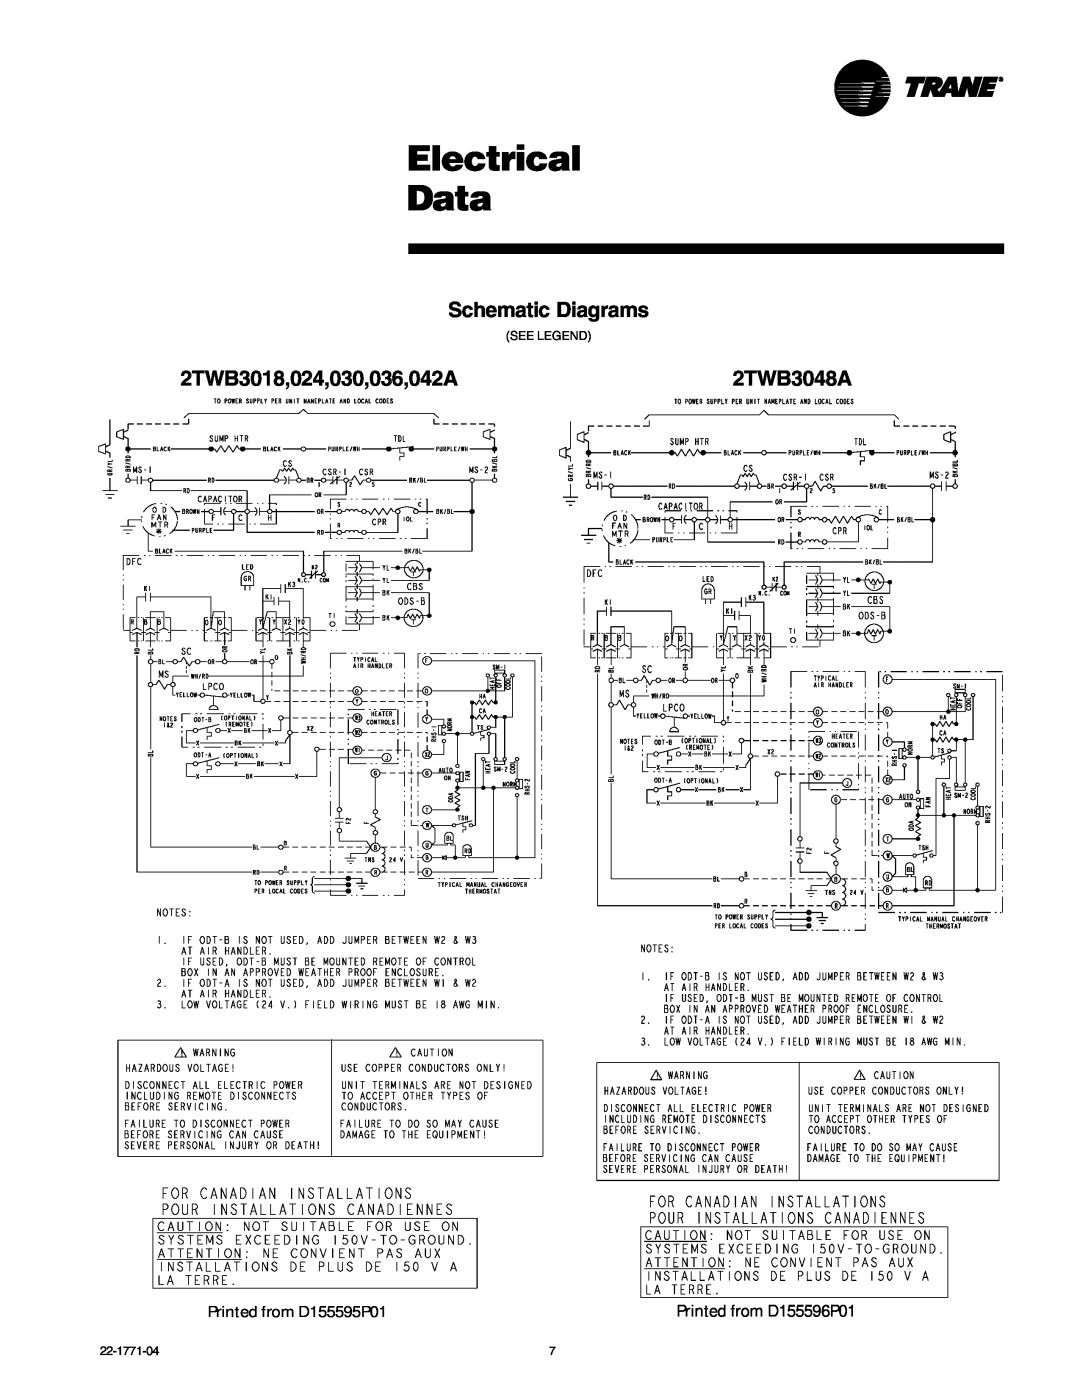 Trane 2TWB3018-060 manual Electrical Data, Schematic Diagrams, 2TWB3018,024,030,036,042A2TWB3048A 